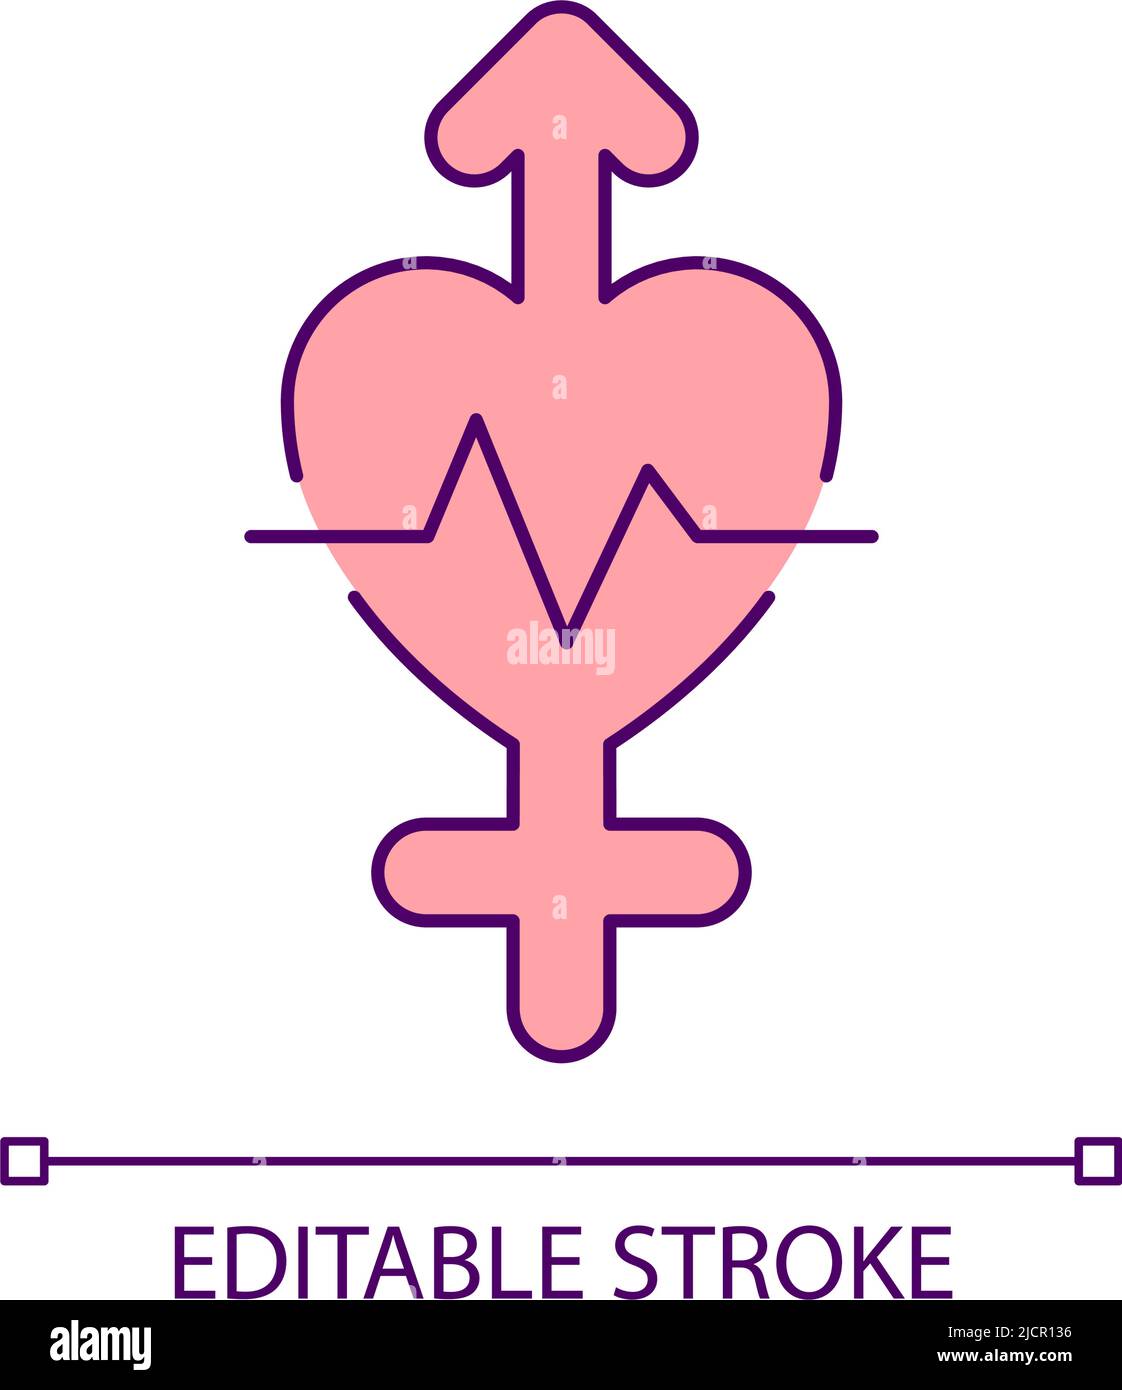 RGB-Farbsymbol zur Gleichstellung der Geschlechter im Gesundheitswesen Stock Vektor